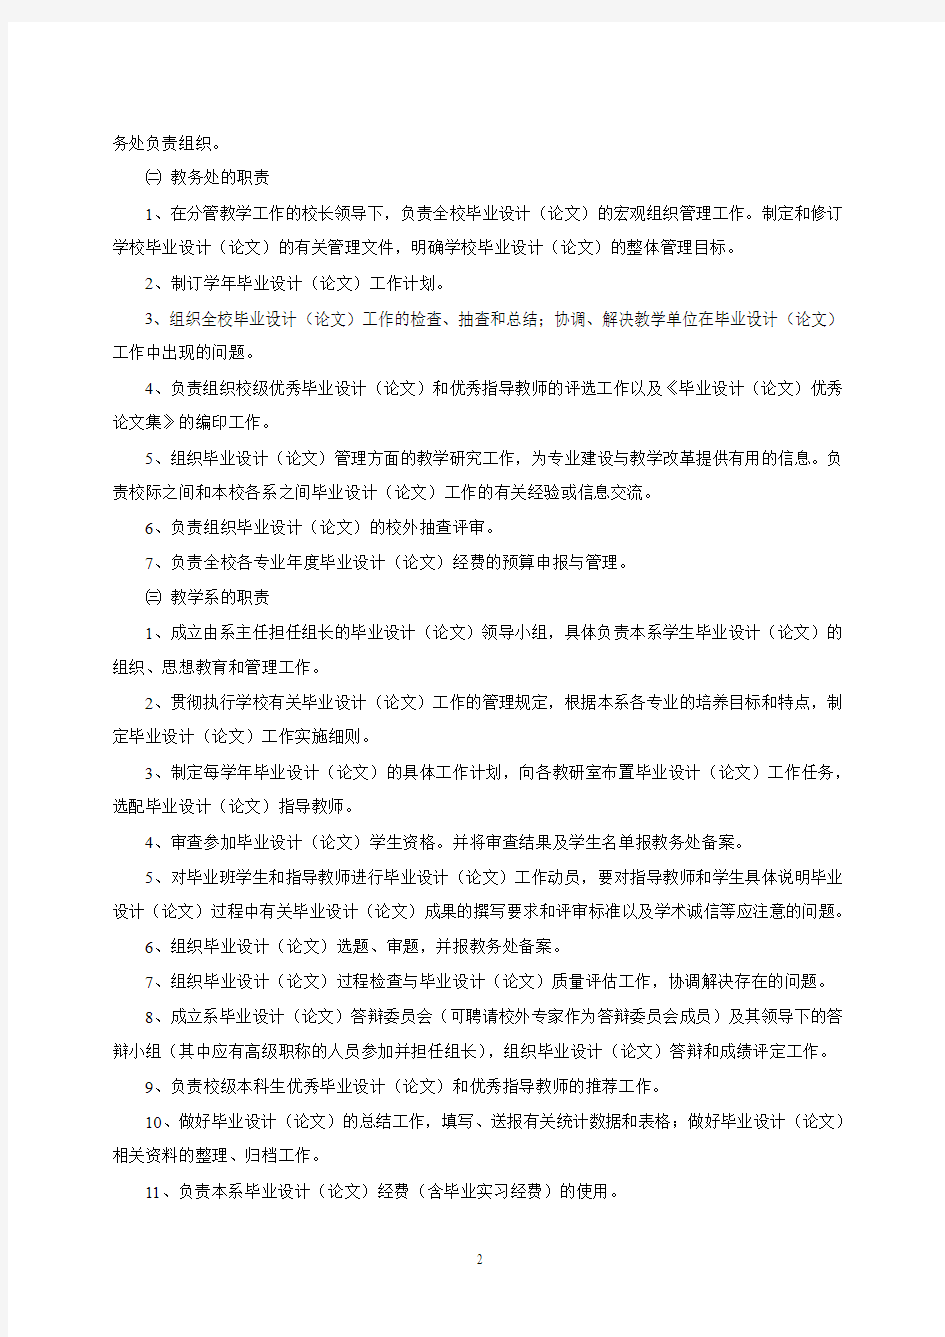 蚌埠学院本科毕业设计(论文)管理暂行办法(2014修订版)